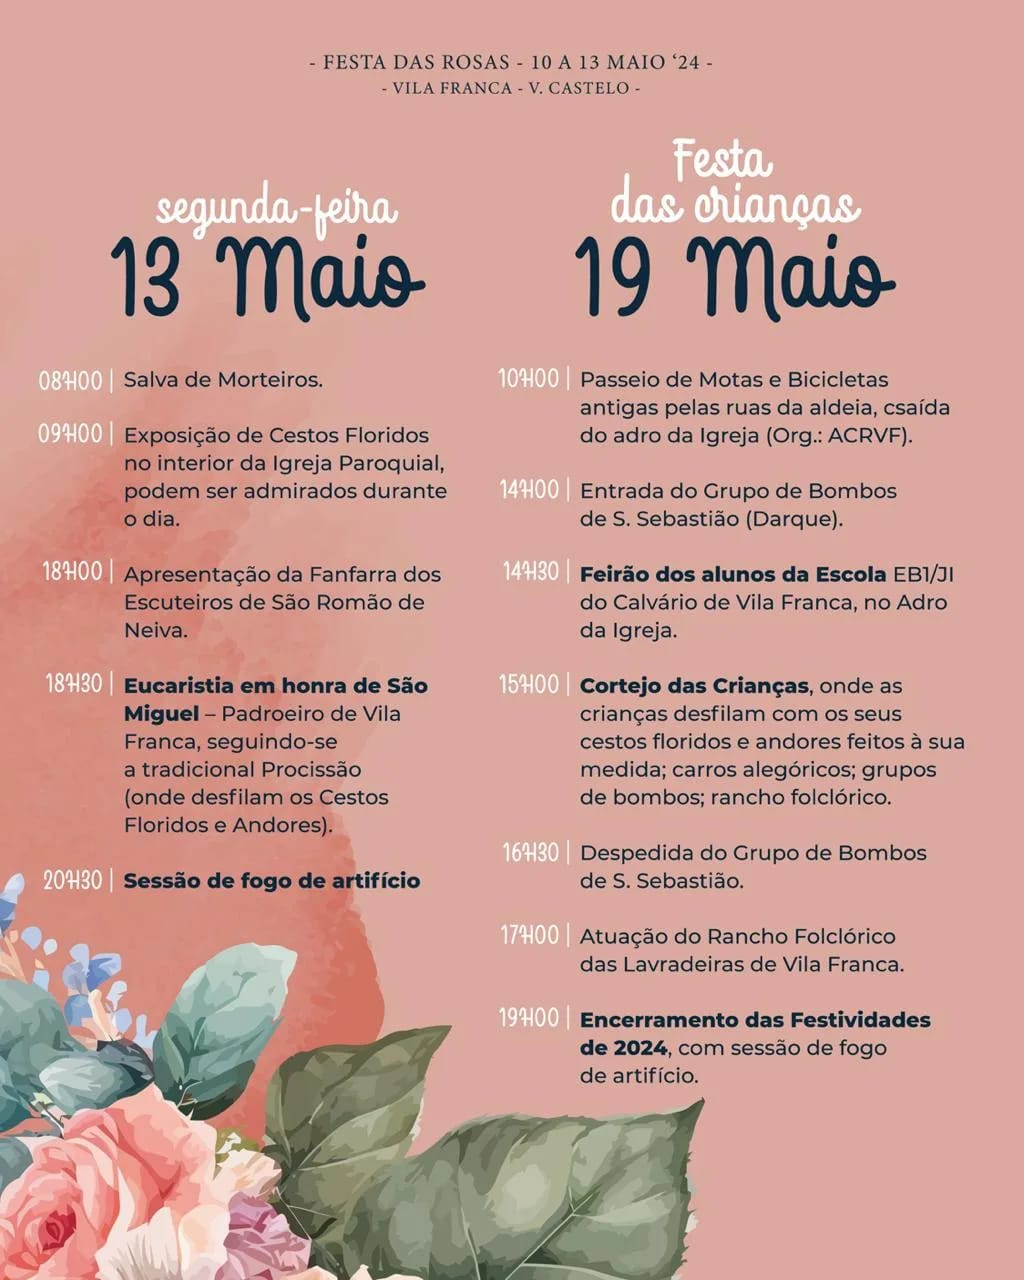 Festa das Rosas Vila Franca